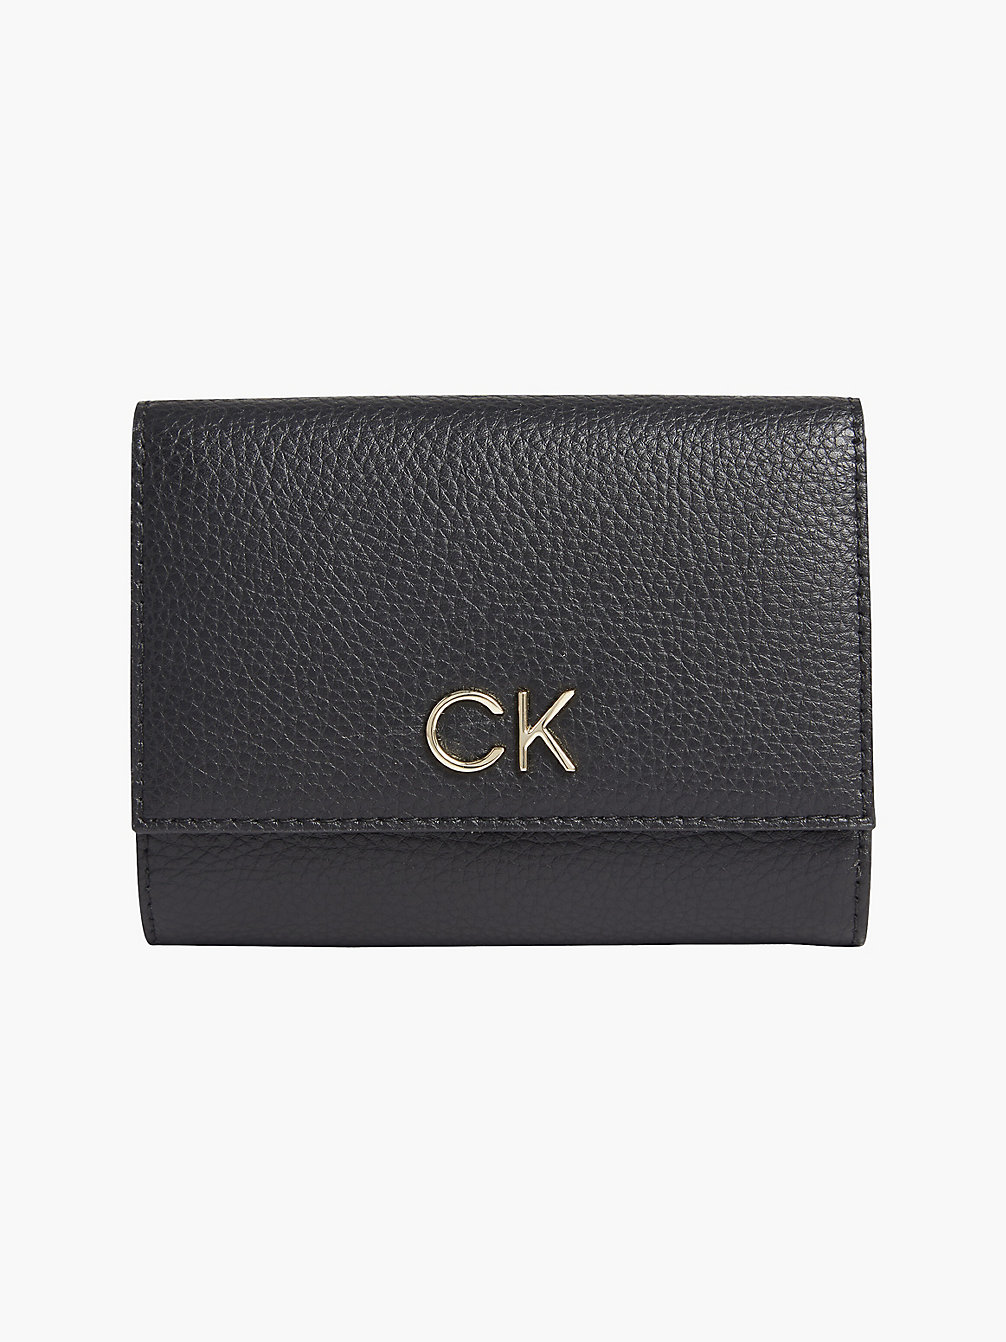 CK BLACK Trifold Wallet undefined women Calvin Klein